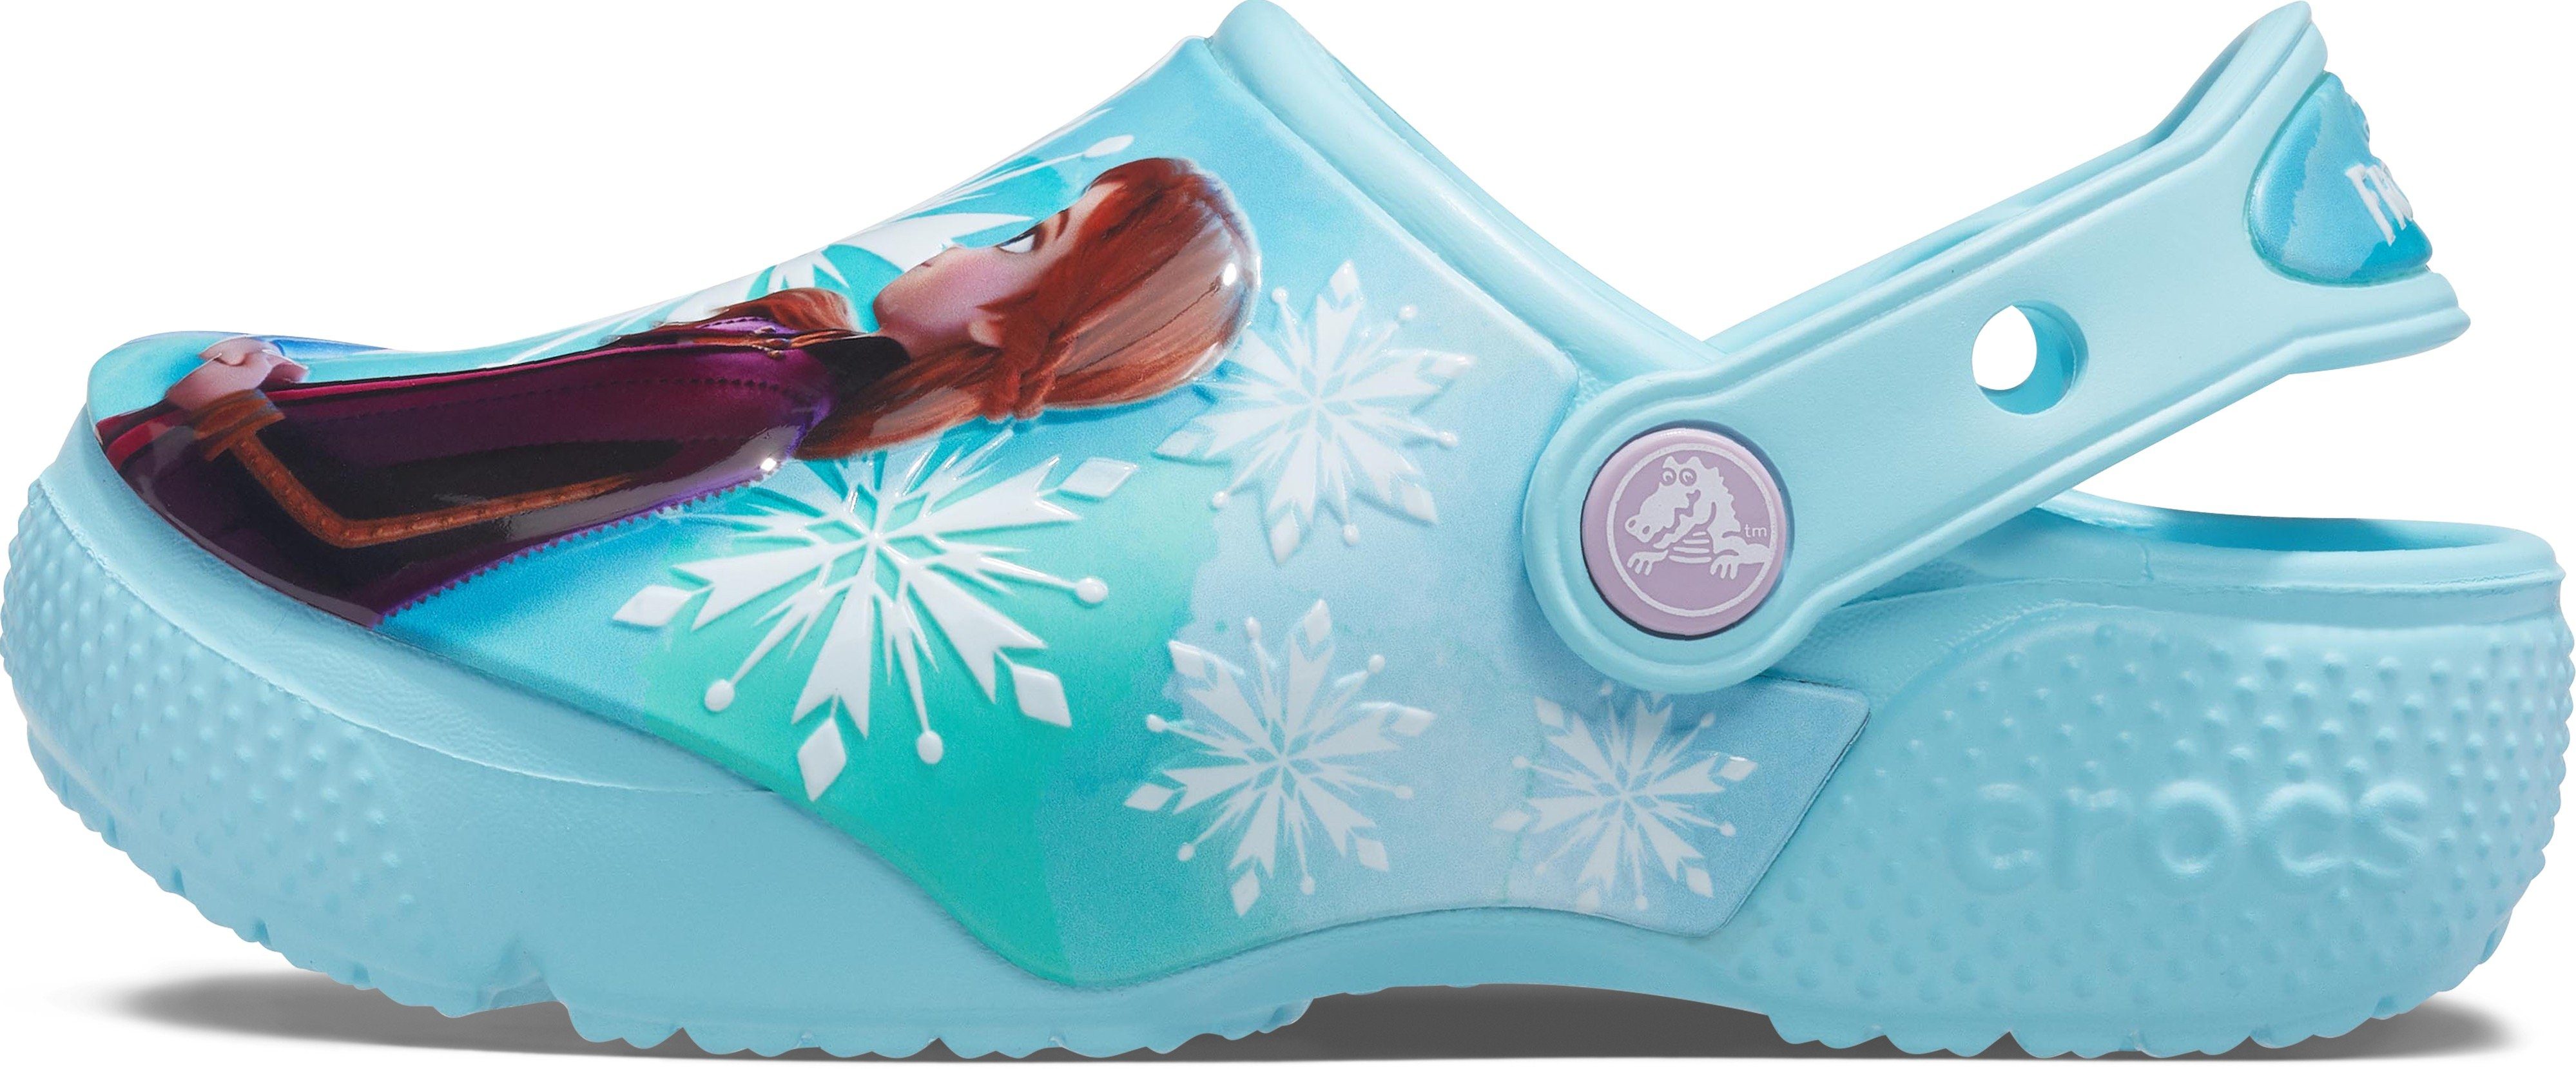 FL aus Disney Crocs Anna" Frozen die Eiskönigin Disney Clog und K 2 "Elsa Clog Motiv mit